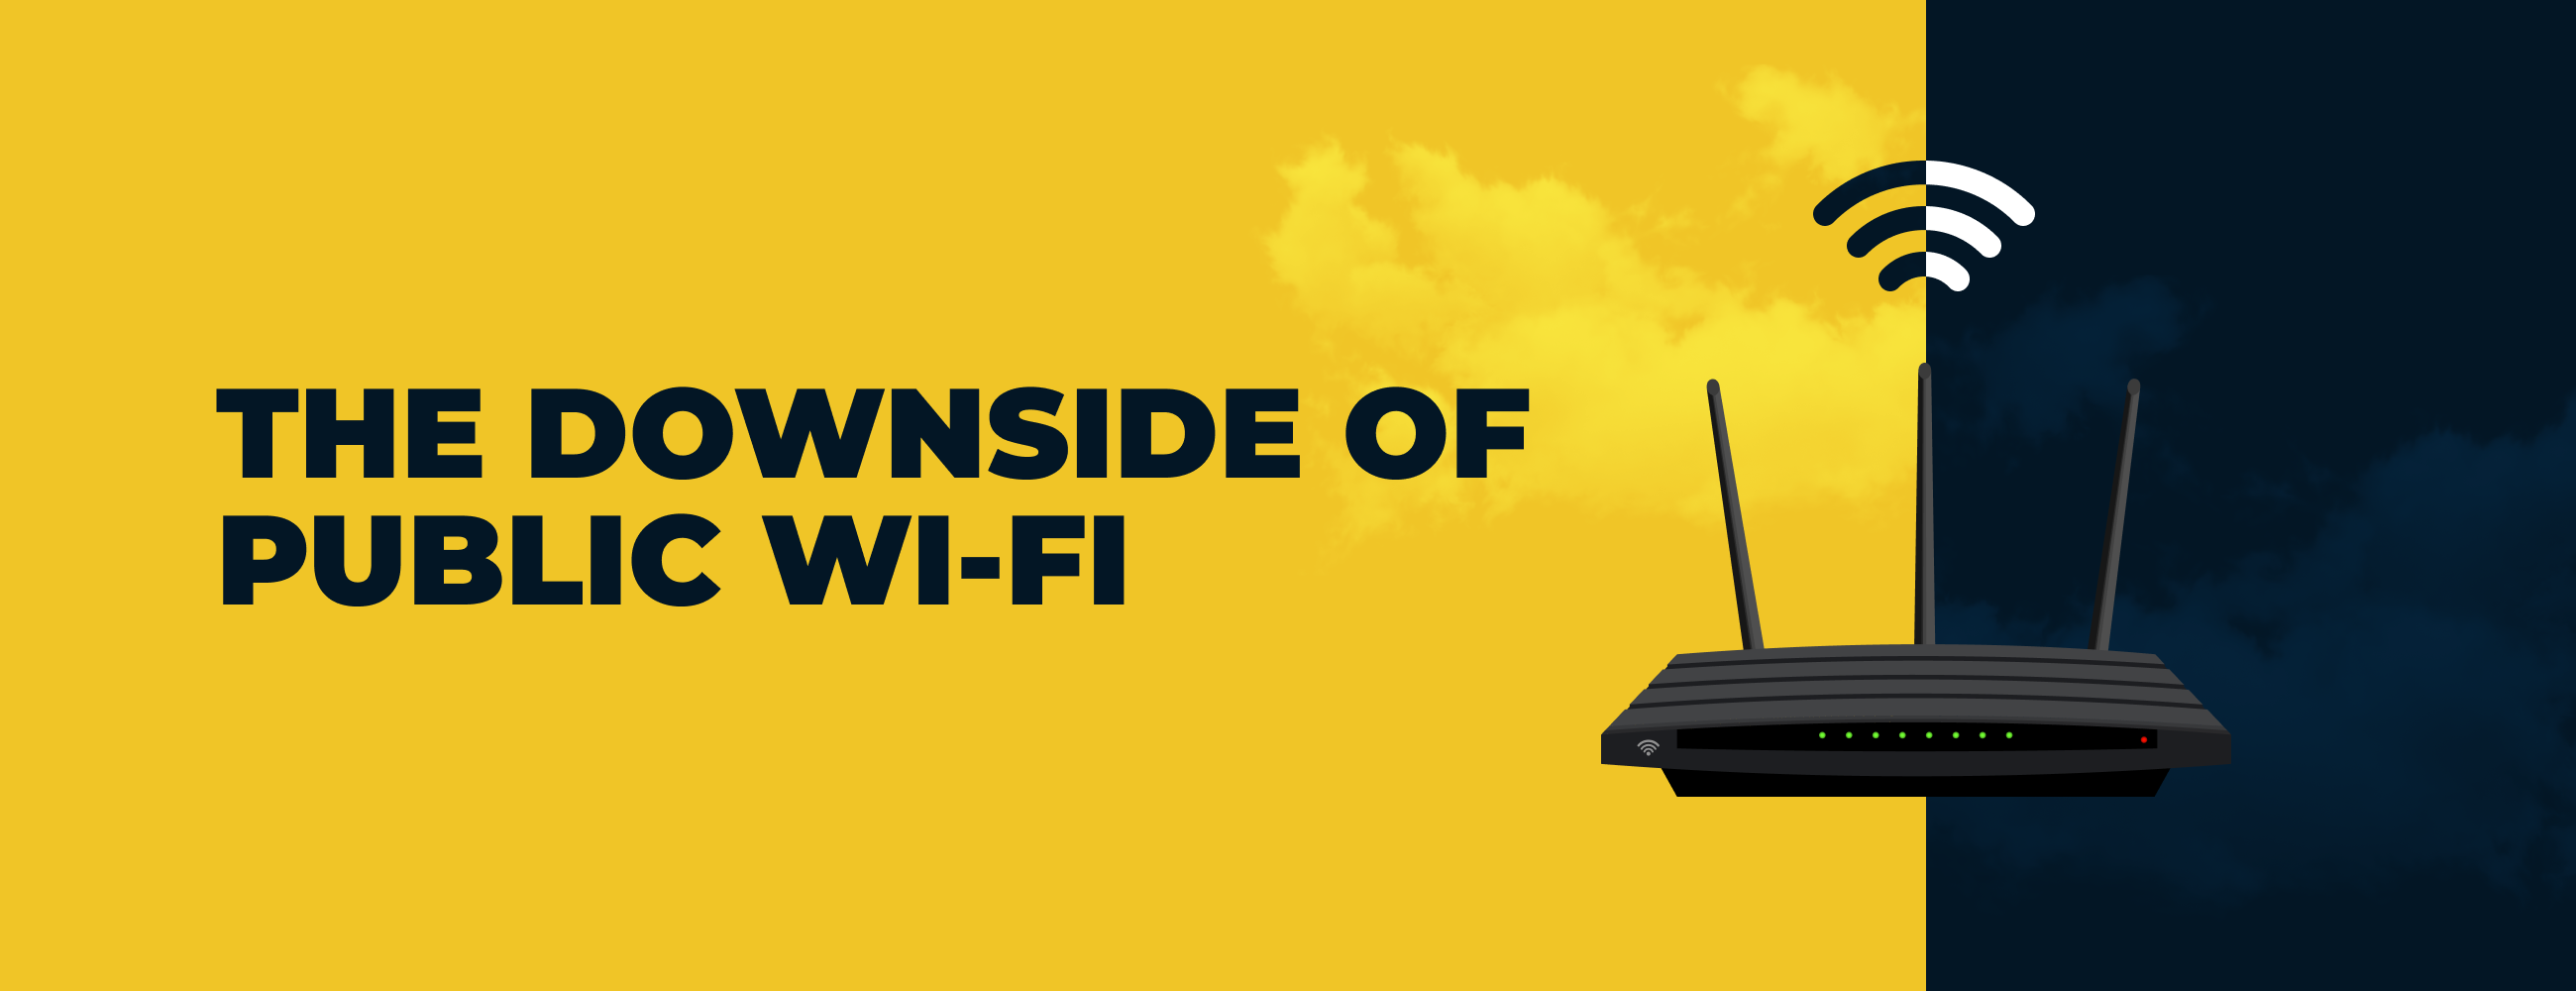 The Downside of Public Wi-Fi